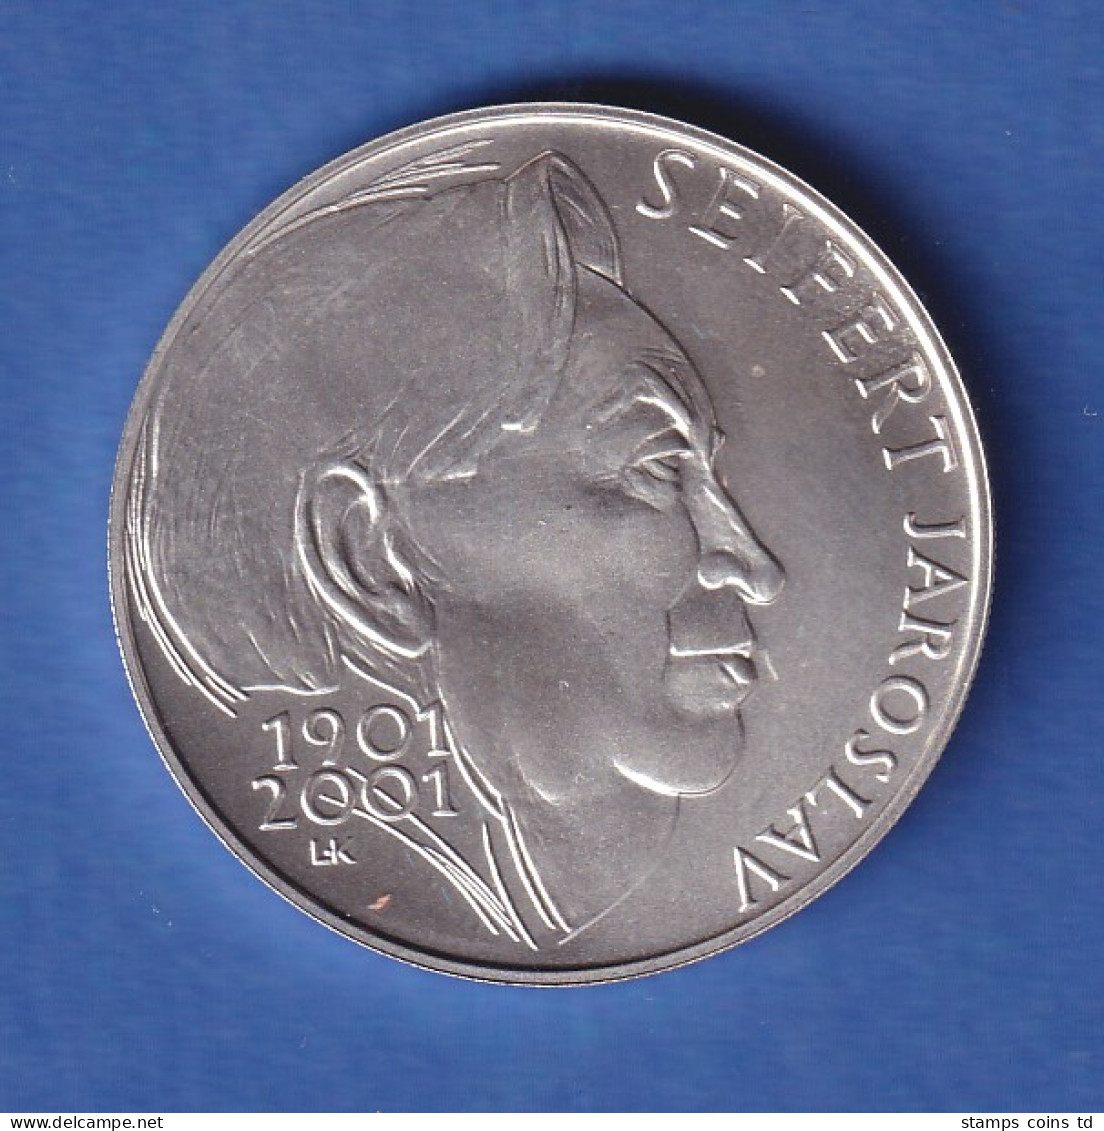 Tschechien 2001 Silbermünze 200 Kronen 100. Geburtstag Von Jaroslav Seifert Stg - Tsjechië